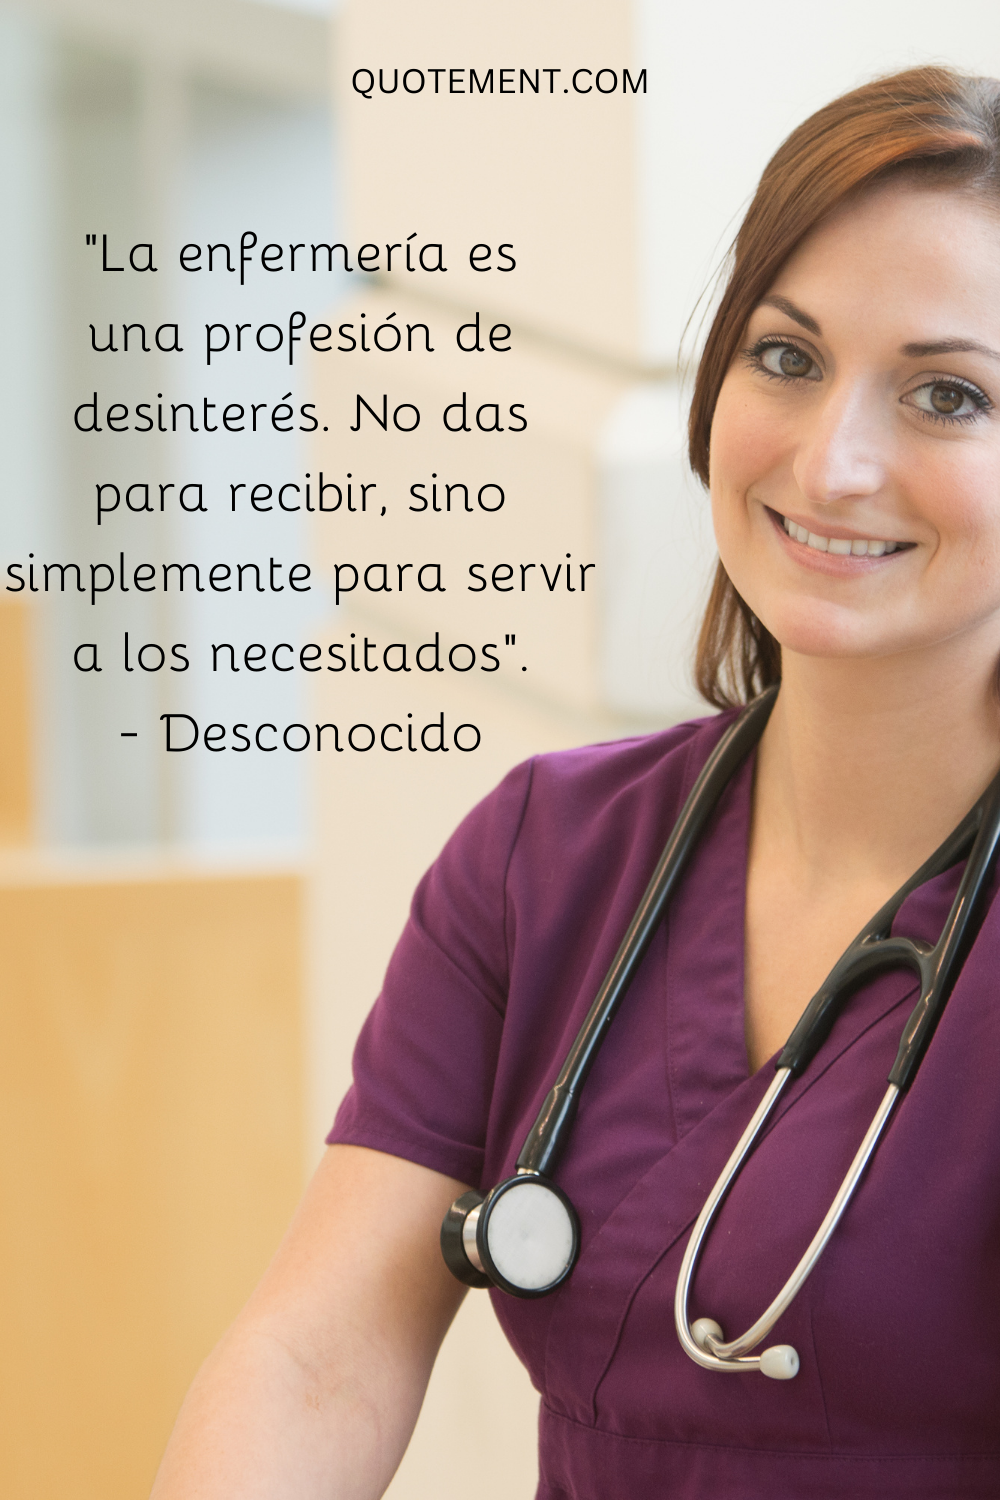 "La enfermería es una profesión desinteresada. No se da para recibir, sino simplemente para servir a los necesitados". - Desconocido